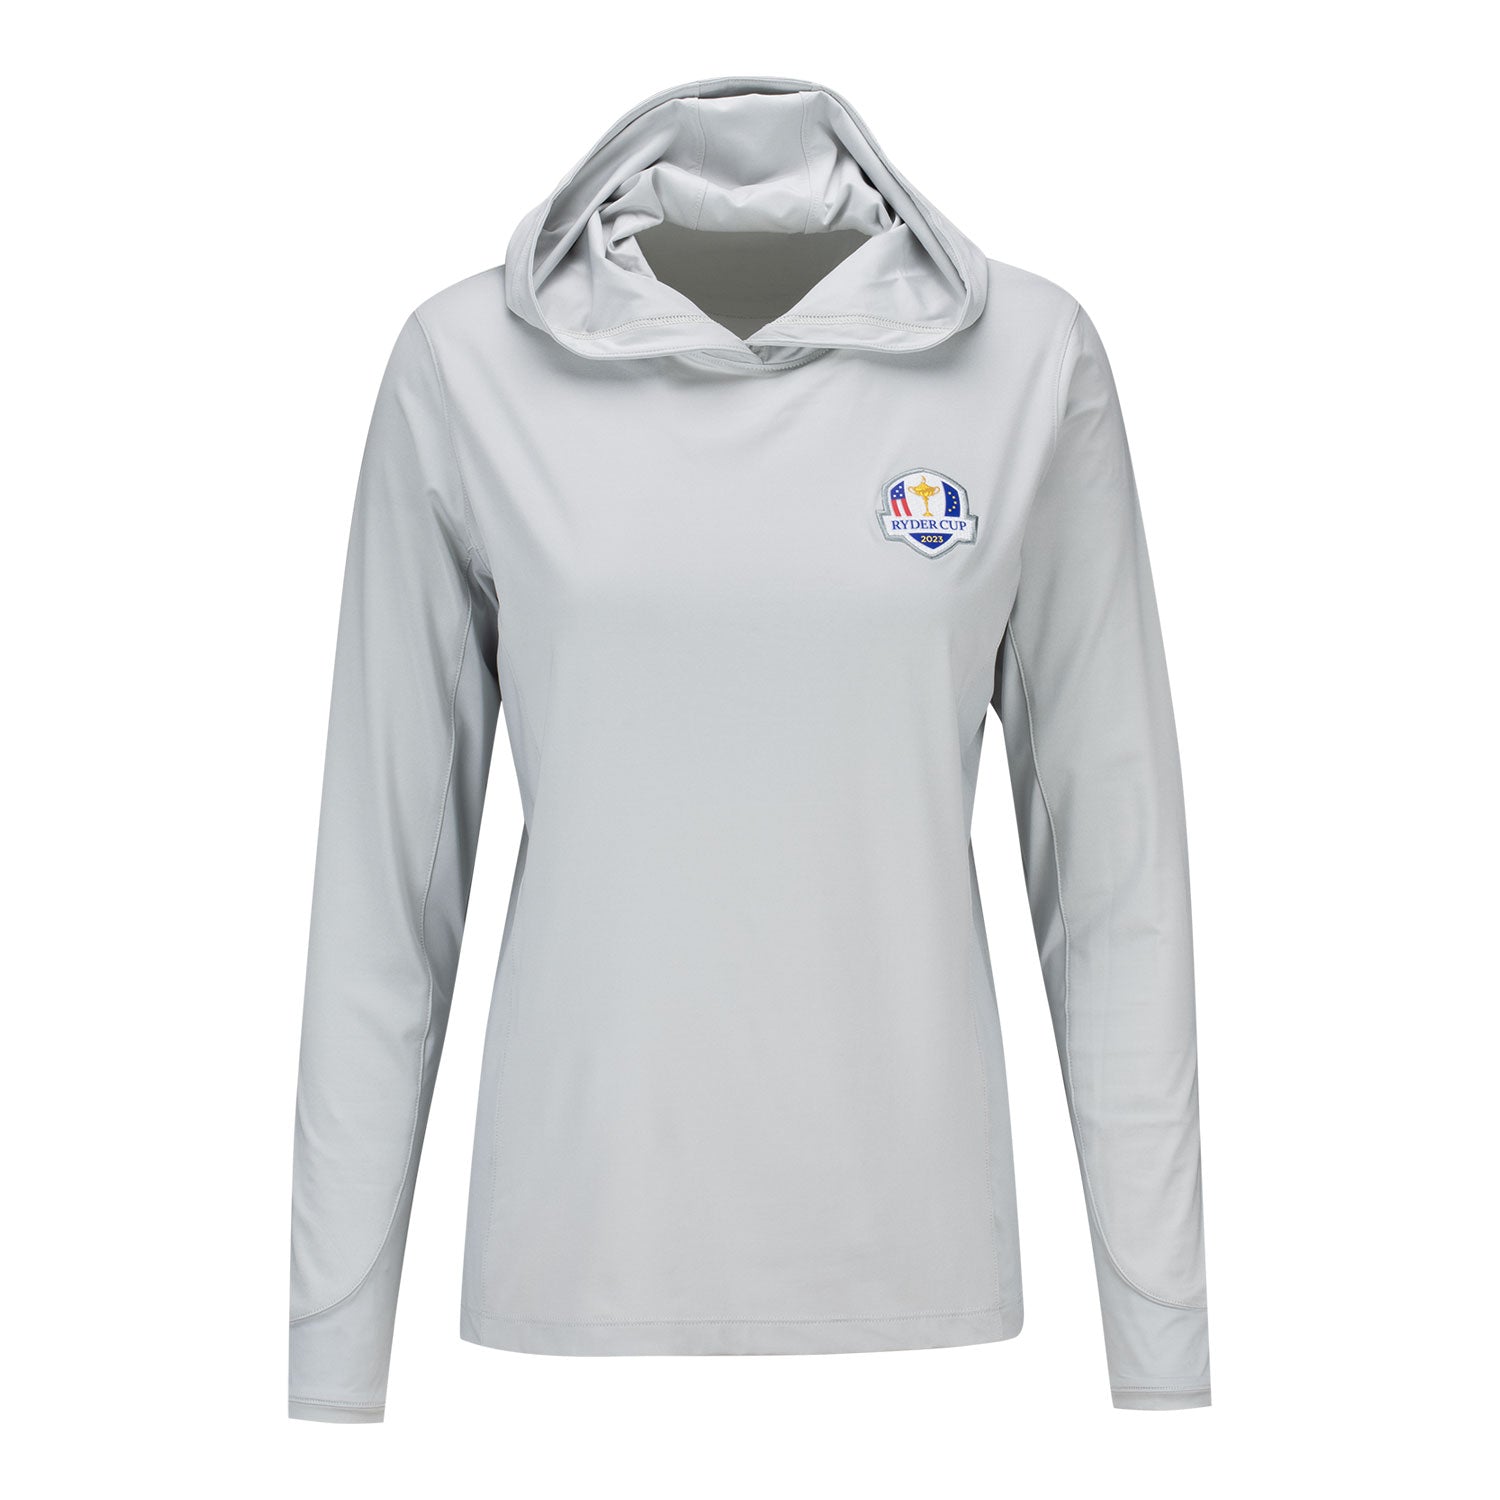 Under Armour Golf Men's Voyager Short-Sleeve 1/4 Zip Pullover, Medium Petrol